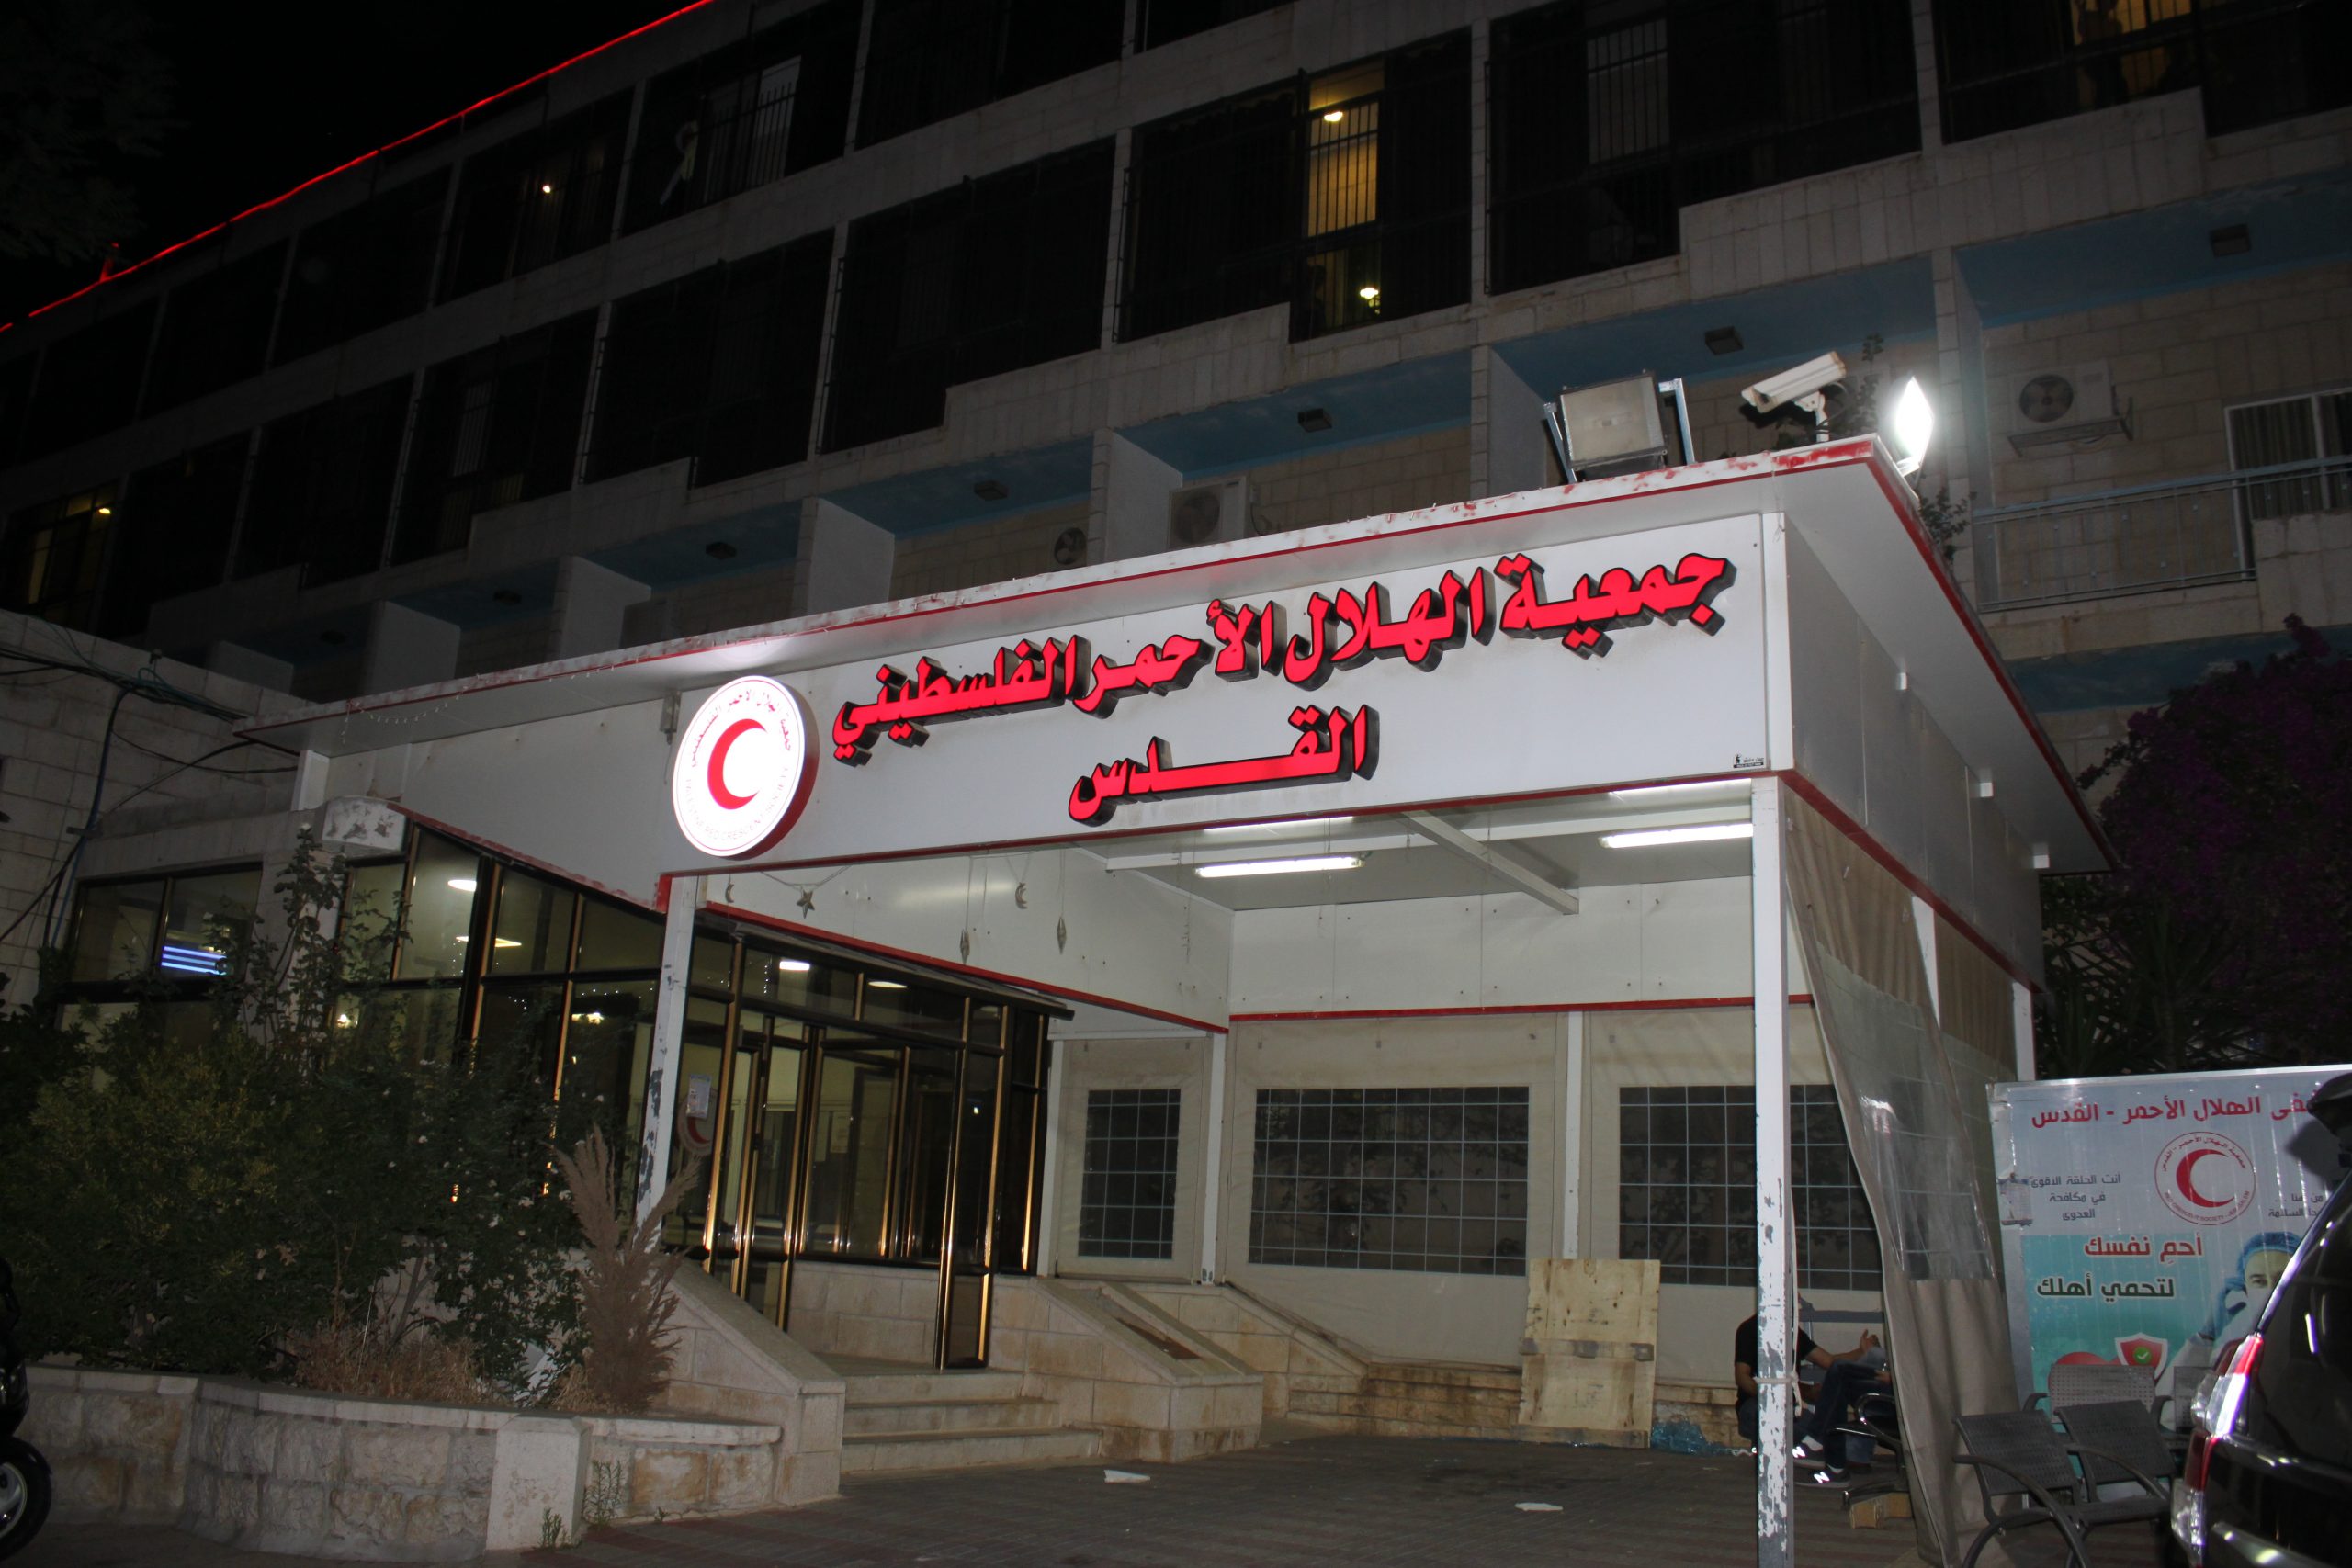 "تيكا" التركية تقدم مستلزمات طبية للهلال الأحمر الفلسطيني بالقدس